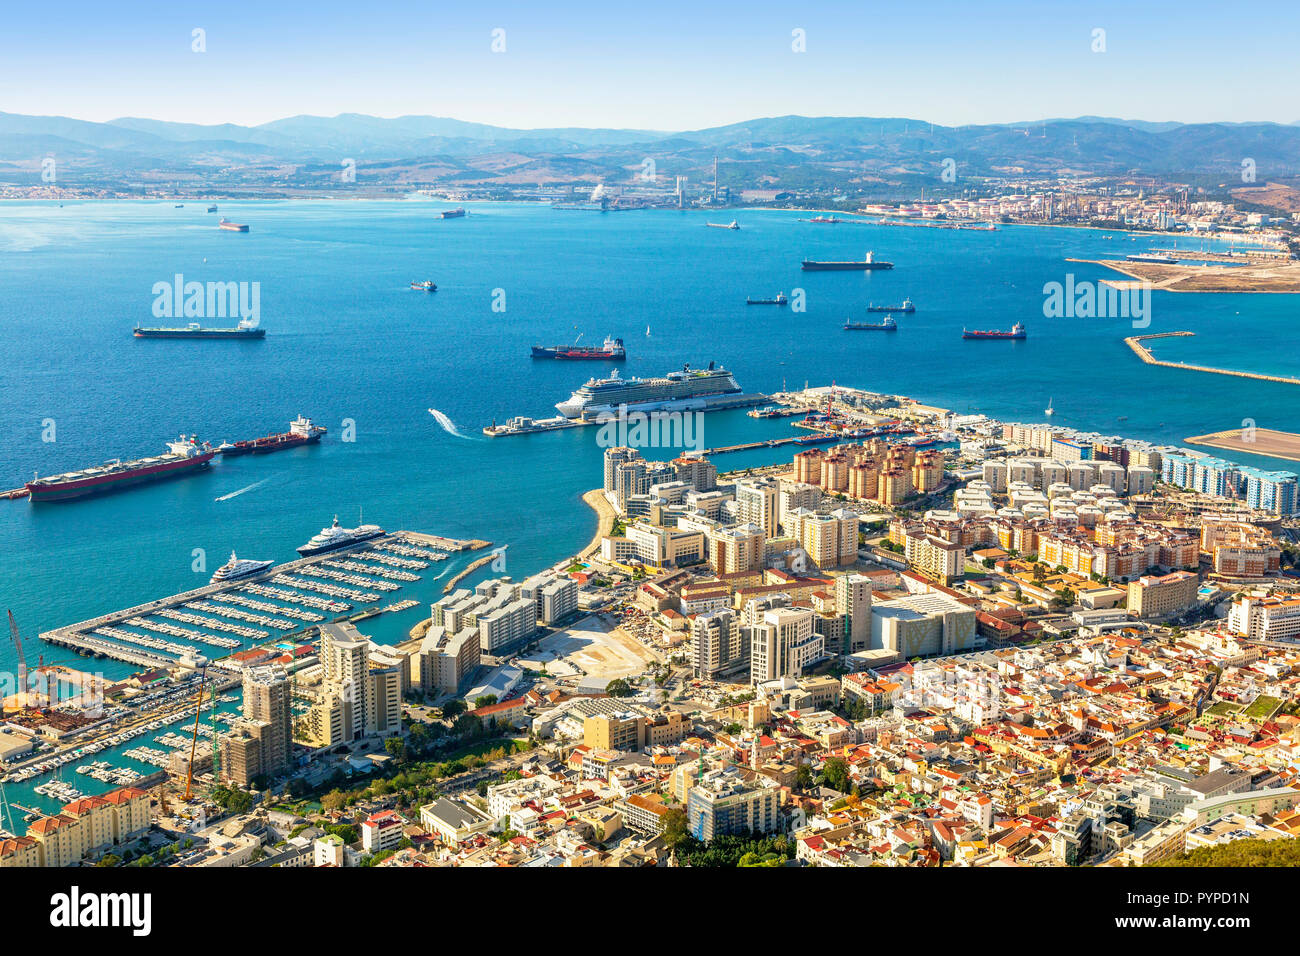 Alta Vista sobre el puerto de Gibraltar con un crucero amarrado al brazo occidental del muelle de contenedores, y vistas a la bahía de Gibraltar a España Foto de stock